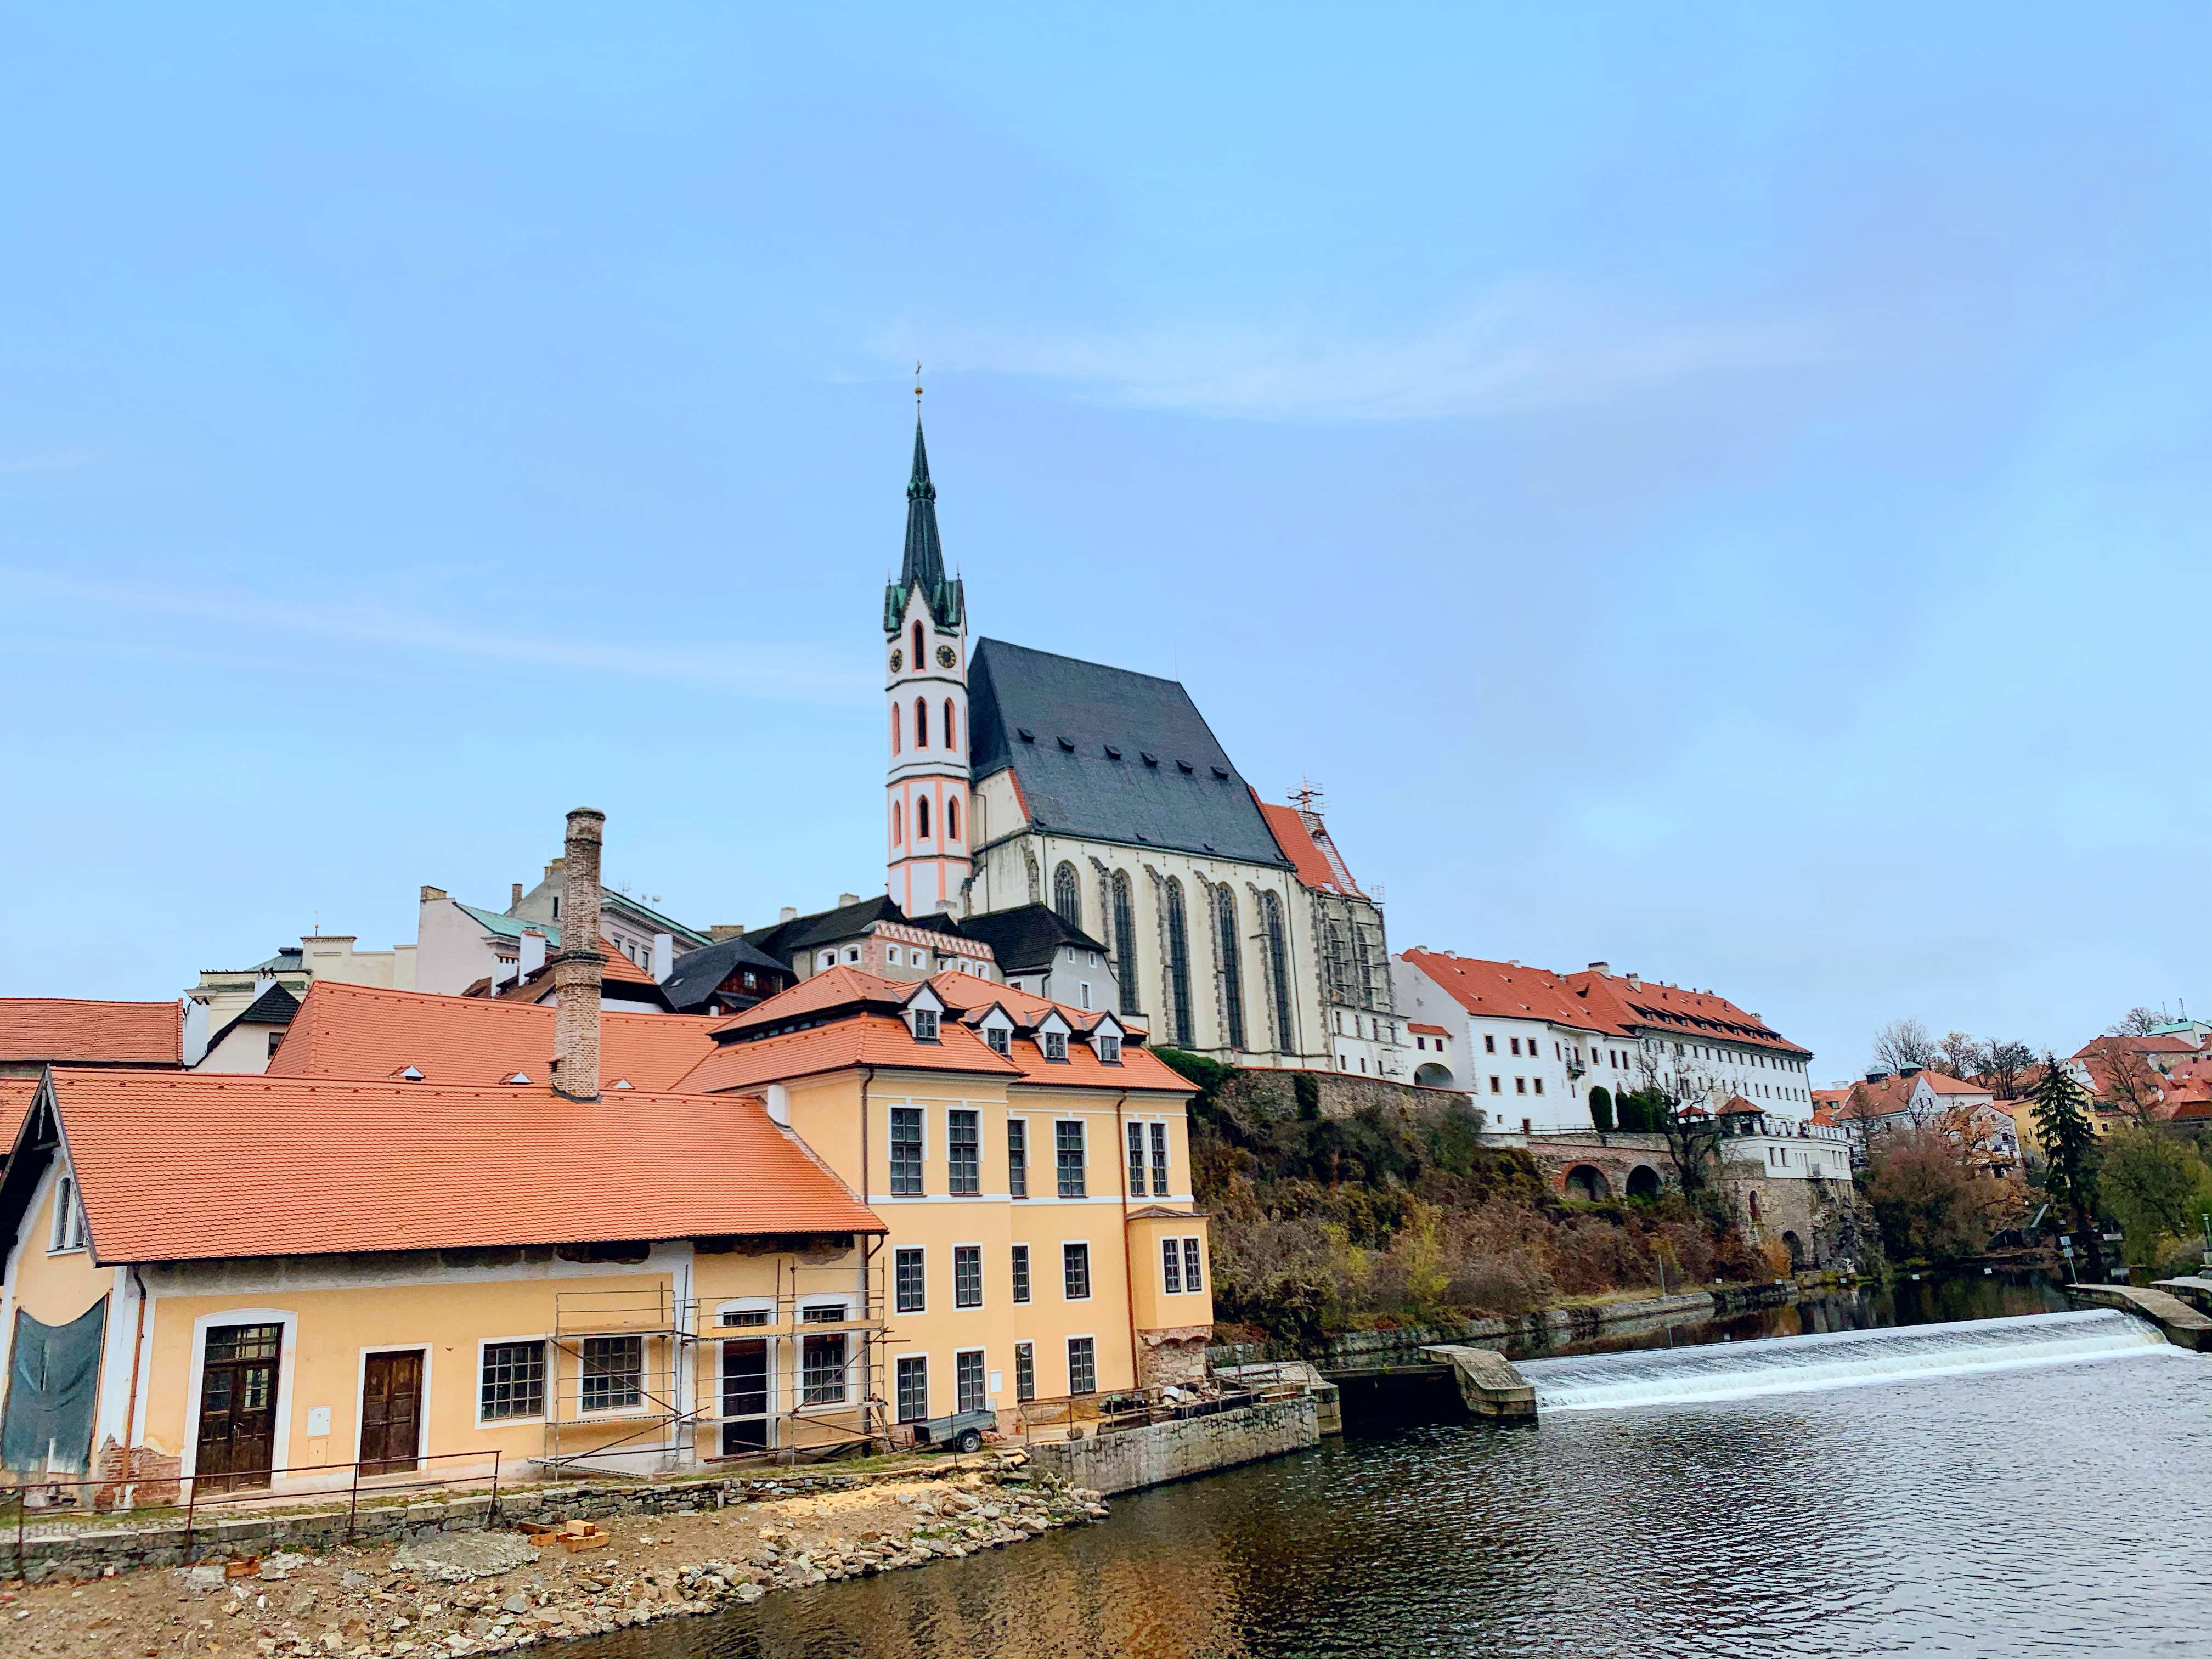 捷克ck小镇|漫游在欧洲中世纪的古堡童话 - 马蜂窝